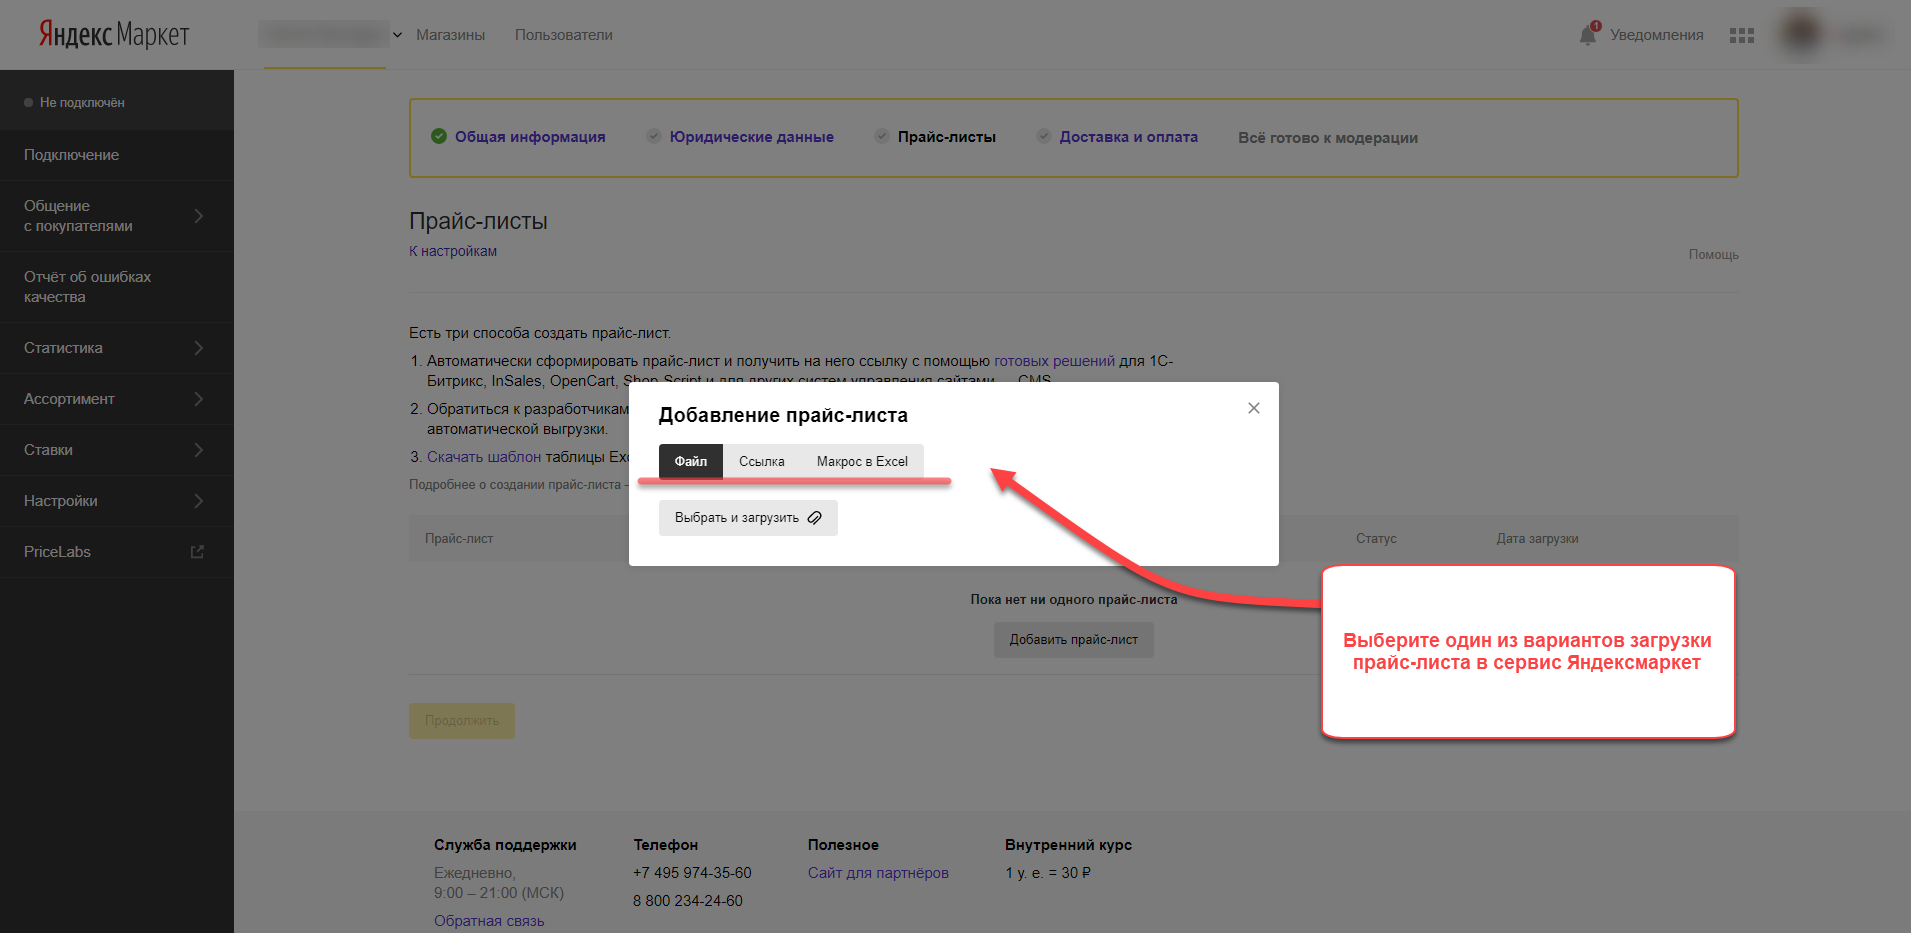 Скришот: Подключение и размещение магазина на Яндекс.Маркет